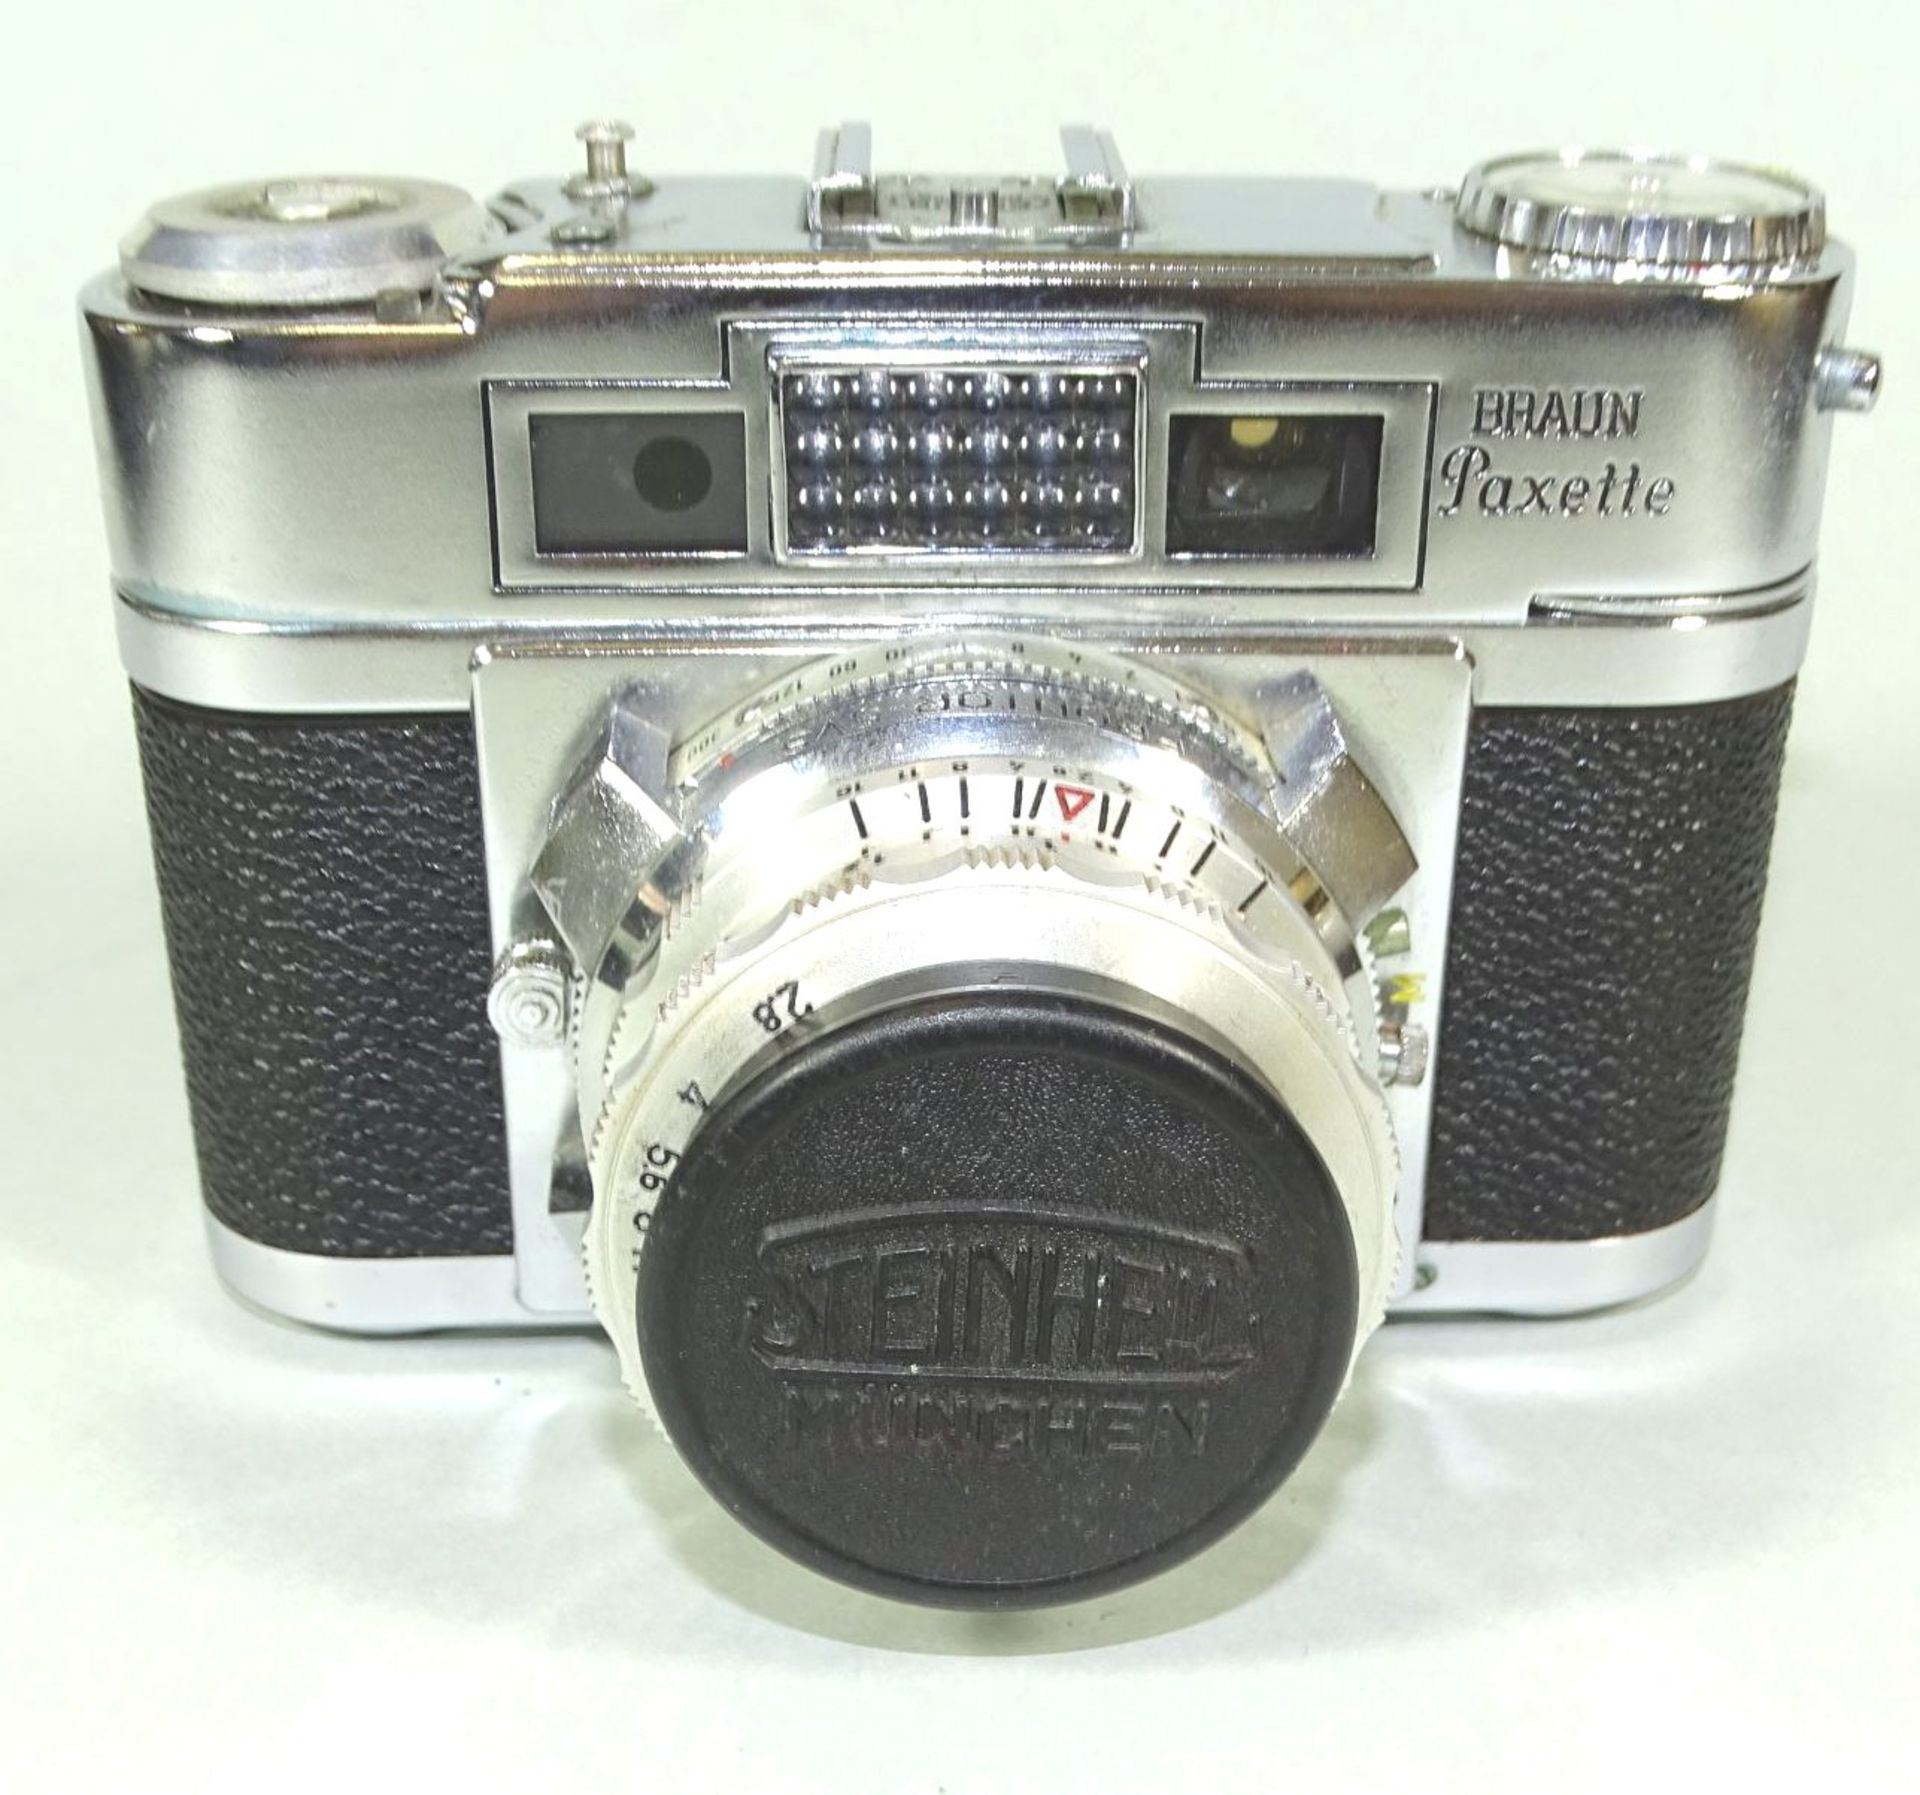 Braun Paxette Super II B Kamera mit Steinheil Cassarit 1:2,8 f=45mm Objektiv, in Ledertasche, gut